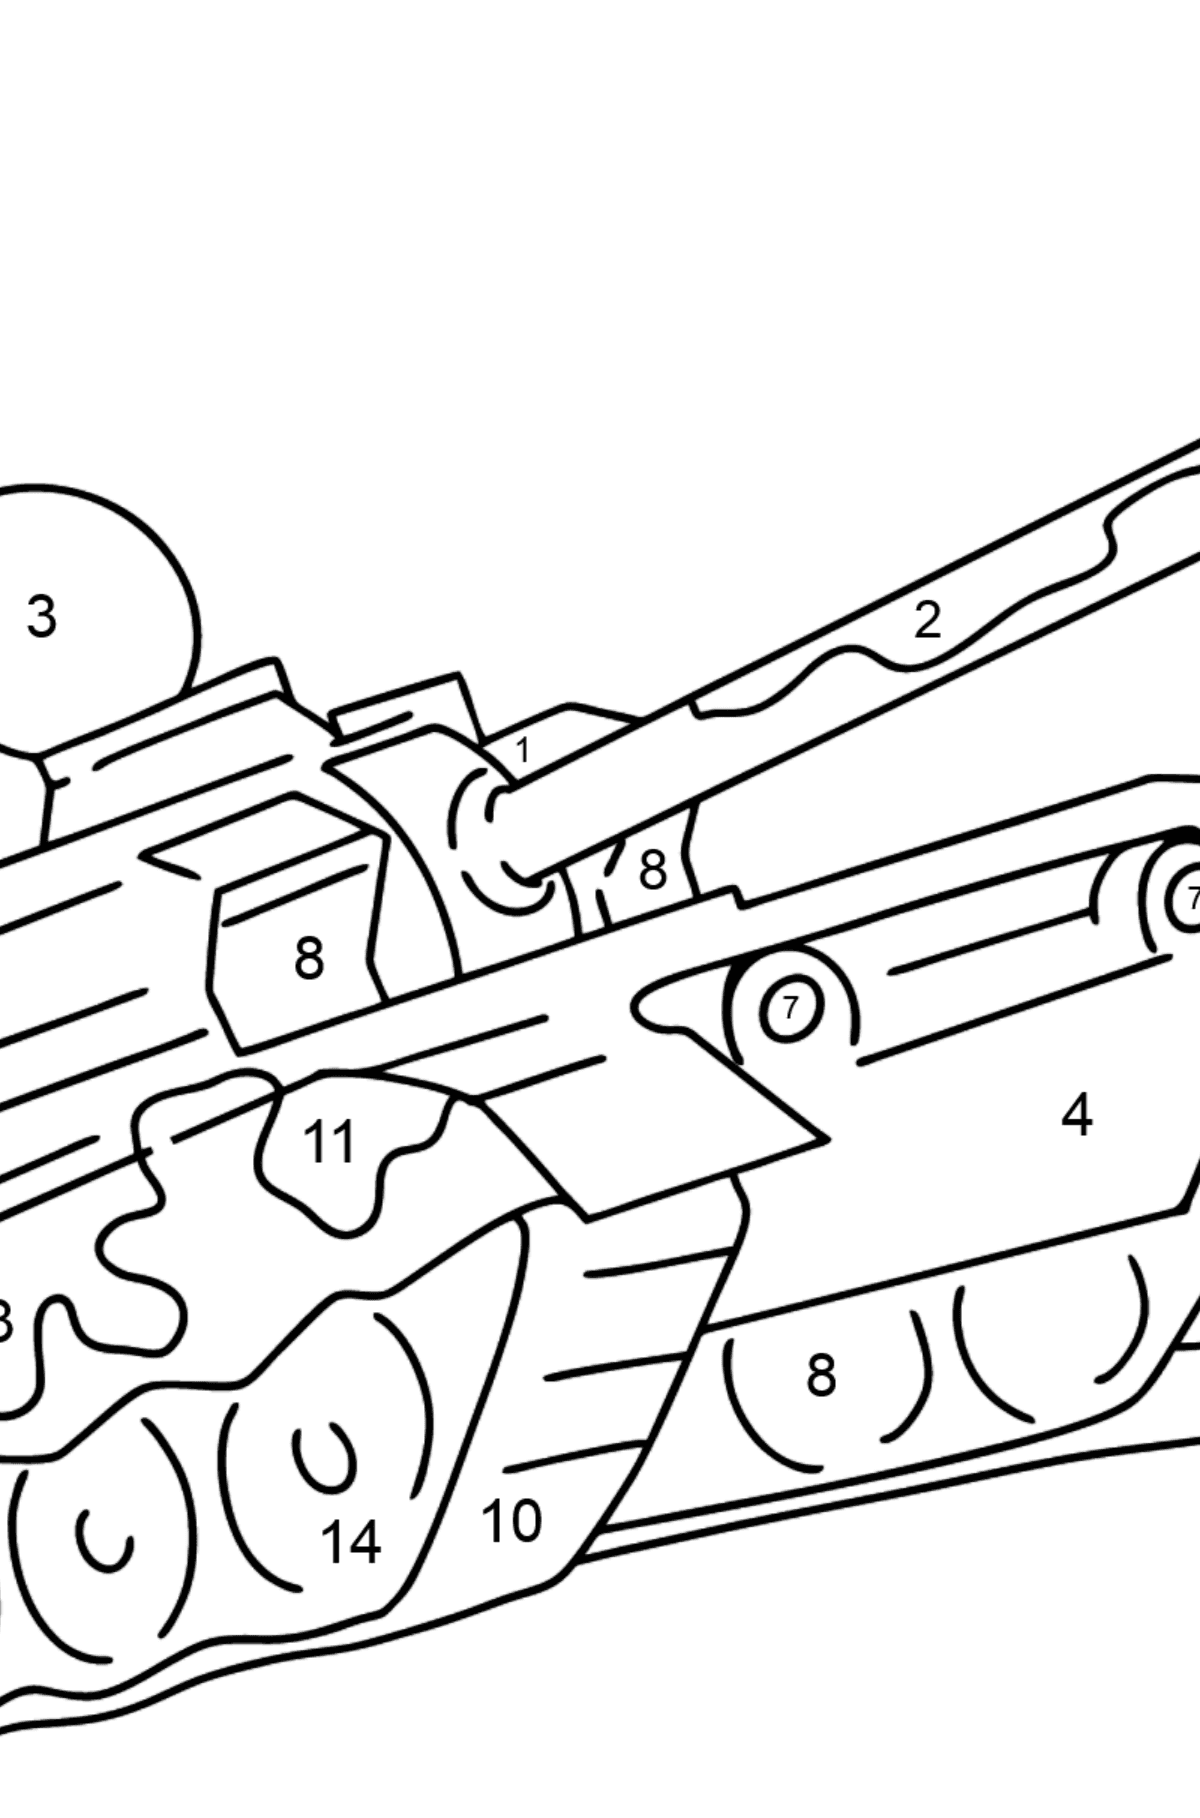 Desenho para colorir de tanques militares - Colorir por Números para Crianças